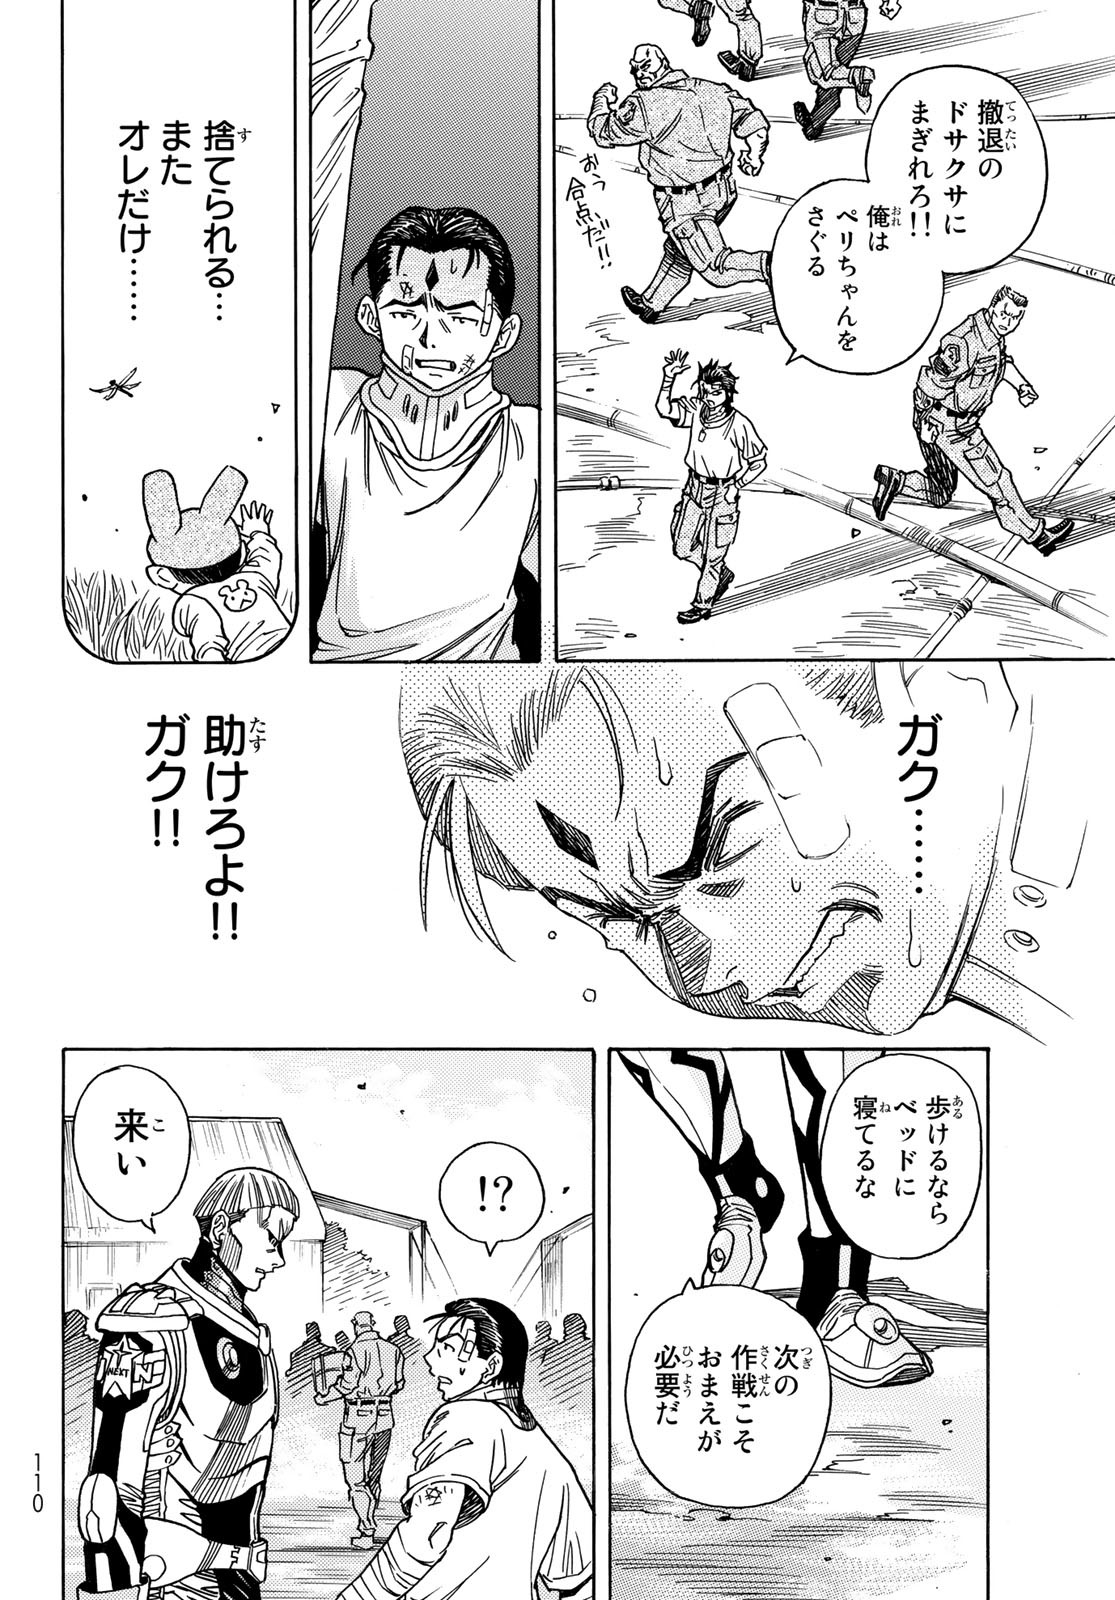 Mugou no Schnell Gear: Chikyuugai Kisouka AI - Chapter 41 - Page 8